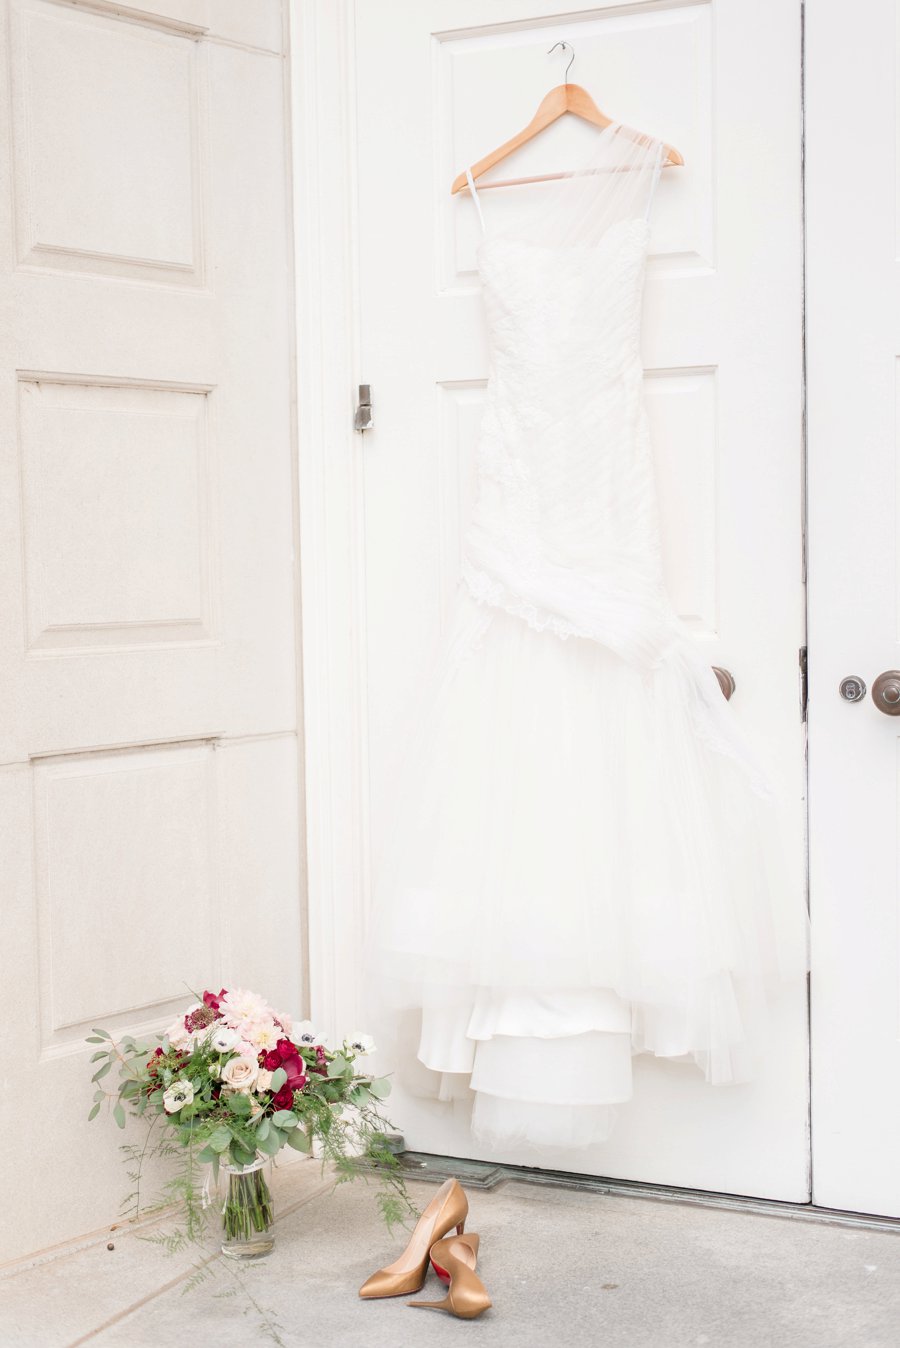 An Classically Elegant Burgundy & Ivory Alabama Wedding via TheELD.com